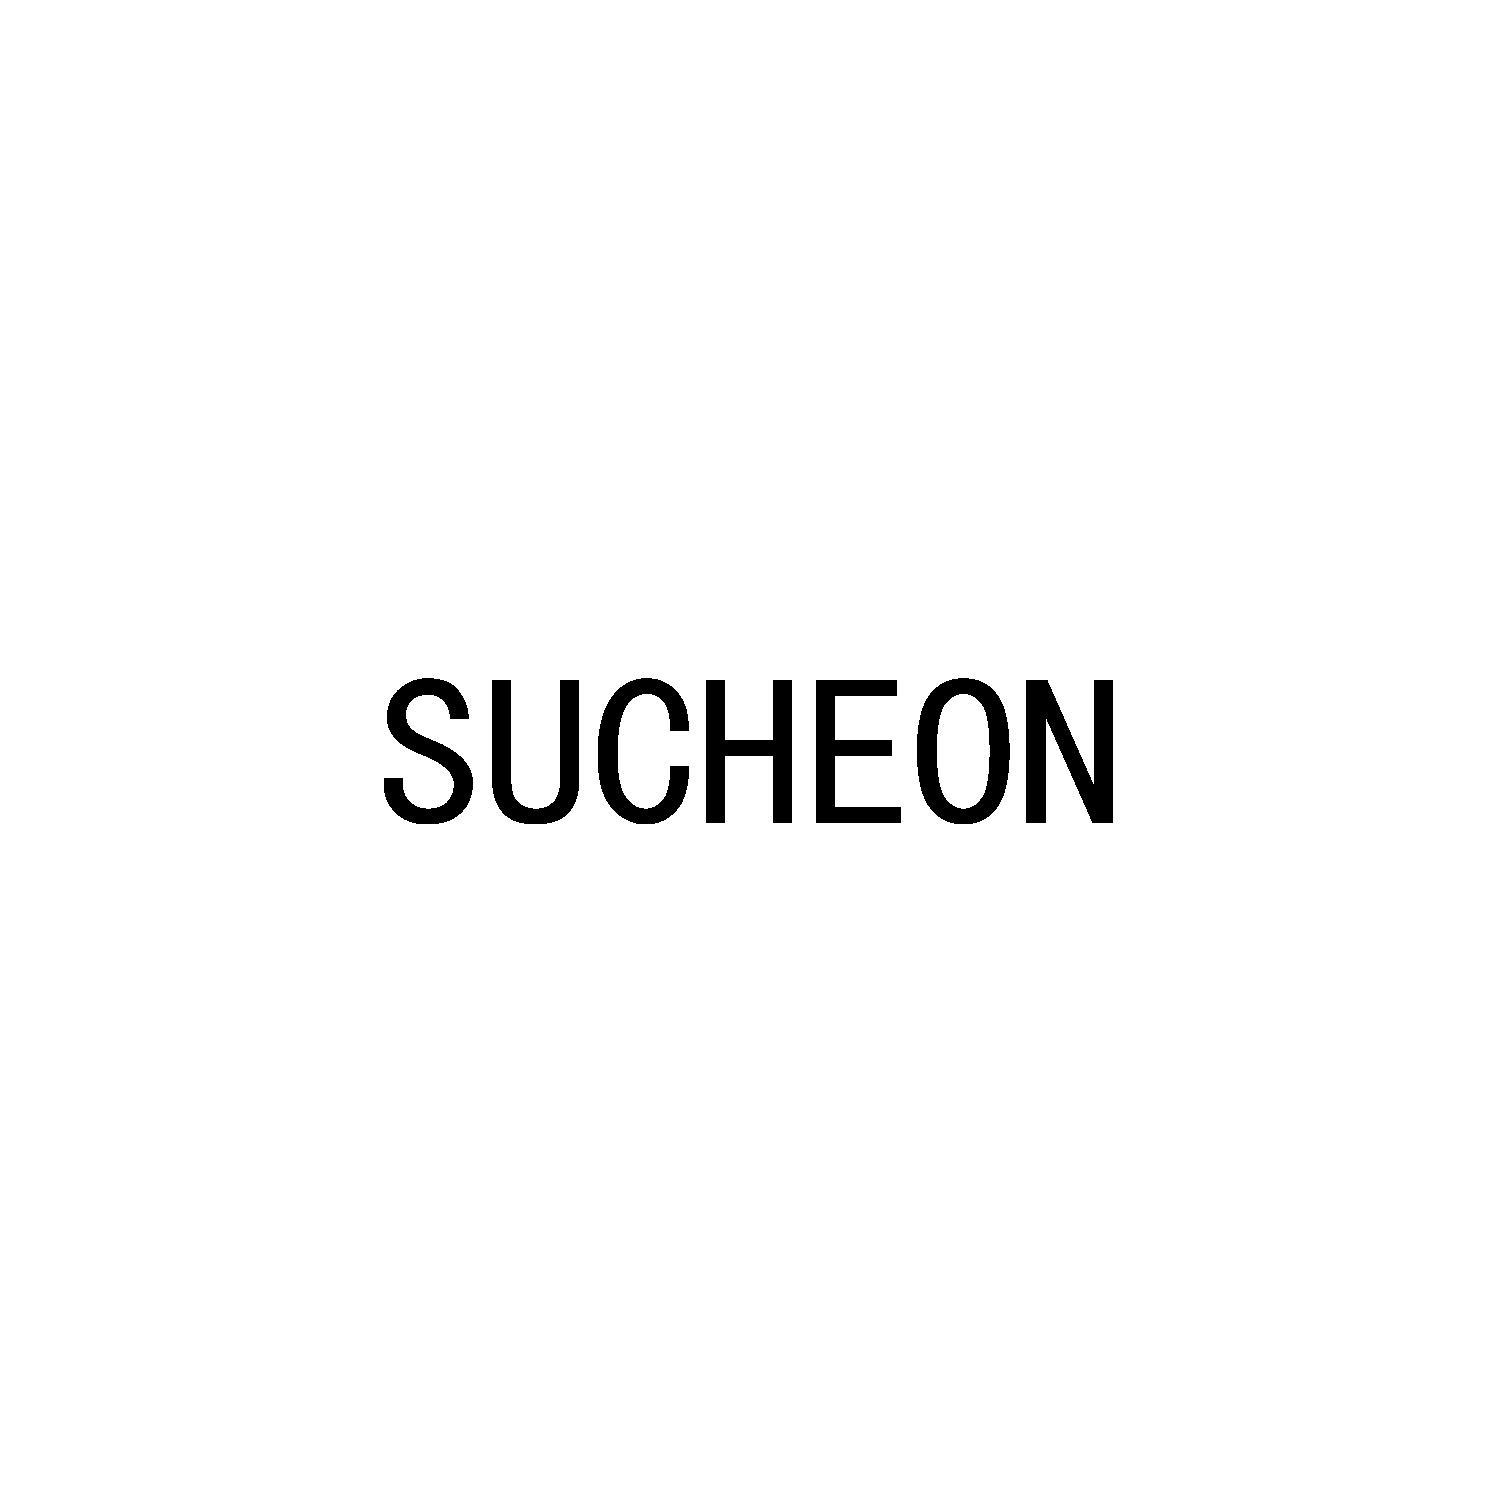 SUCHEON